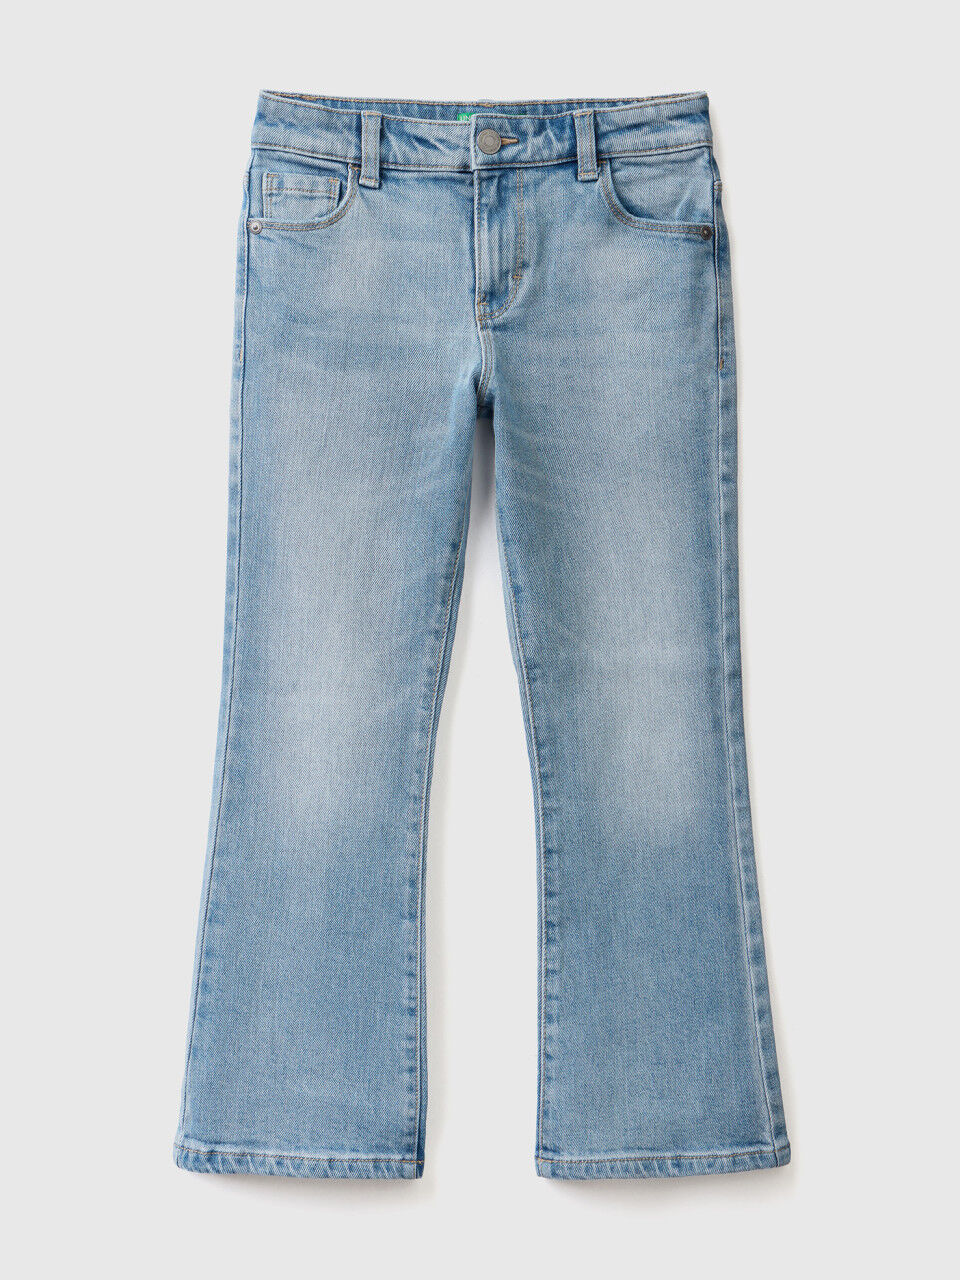 Five pocket flared jeans